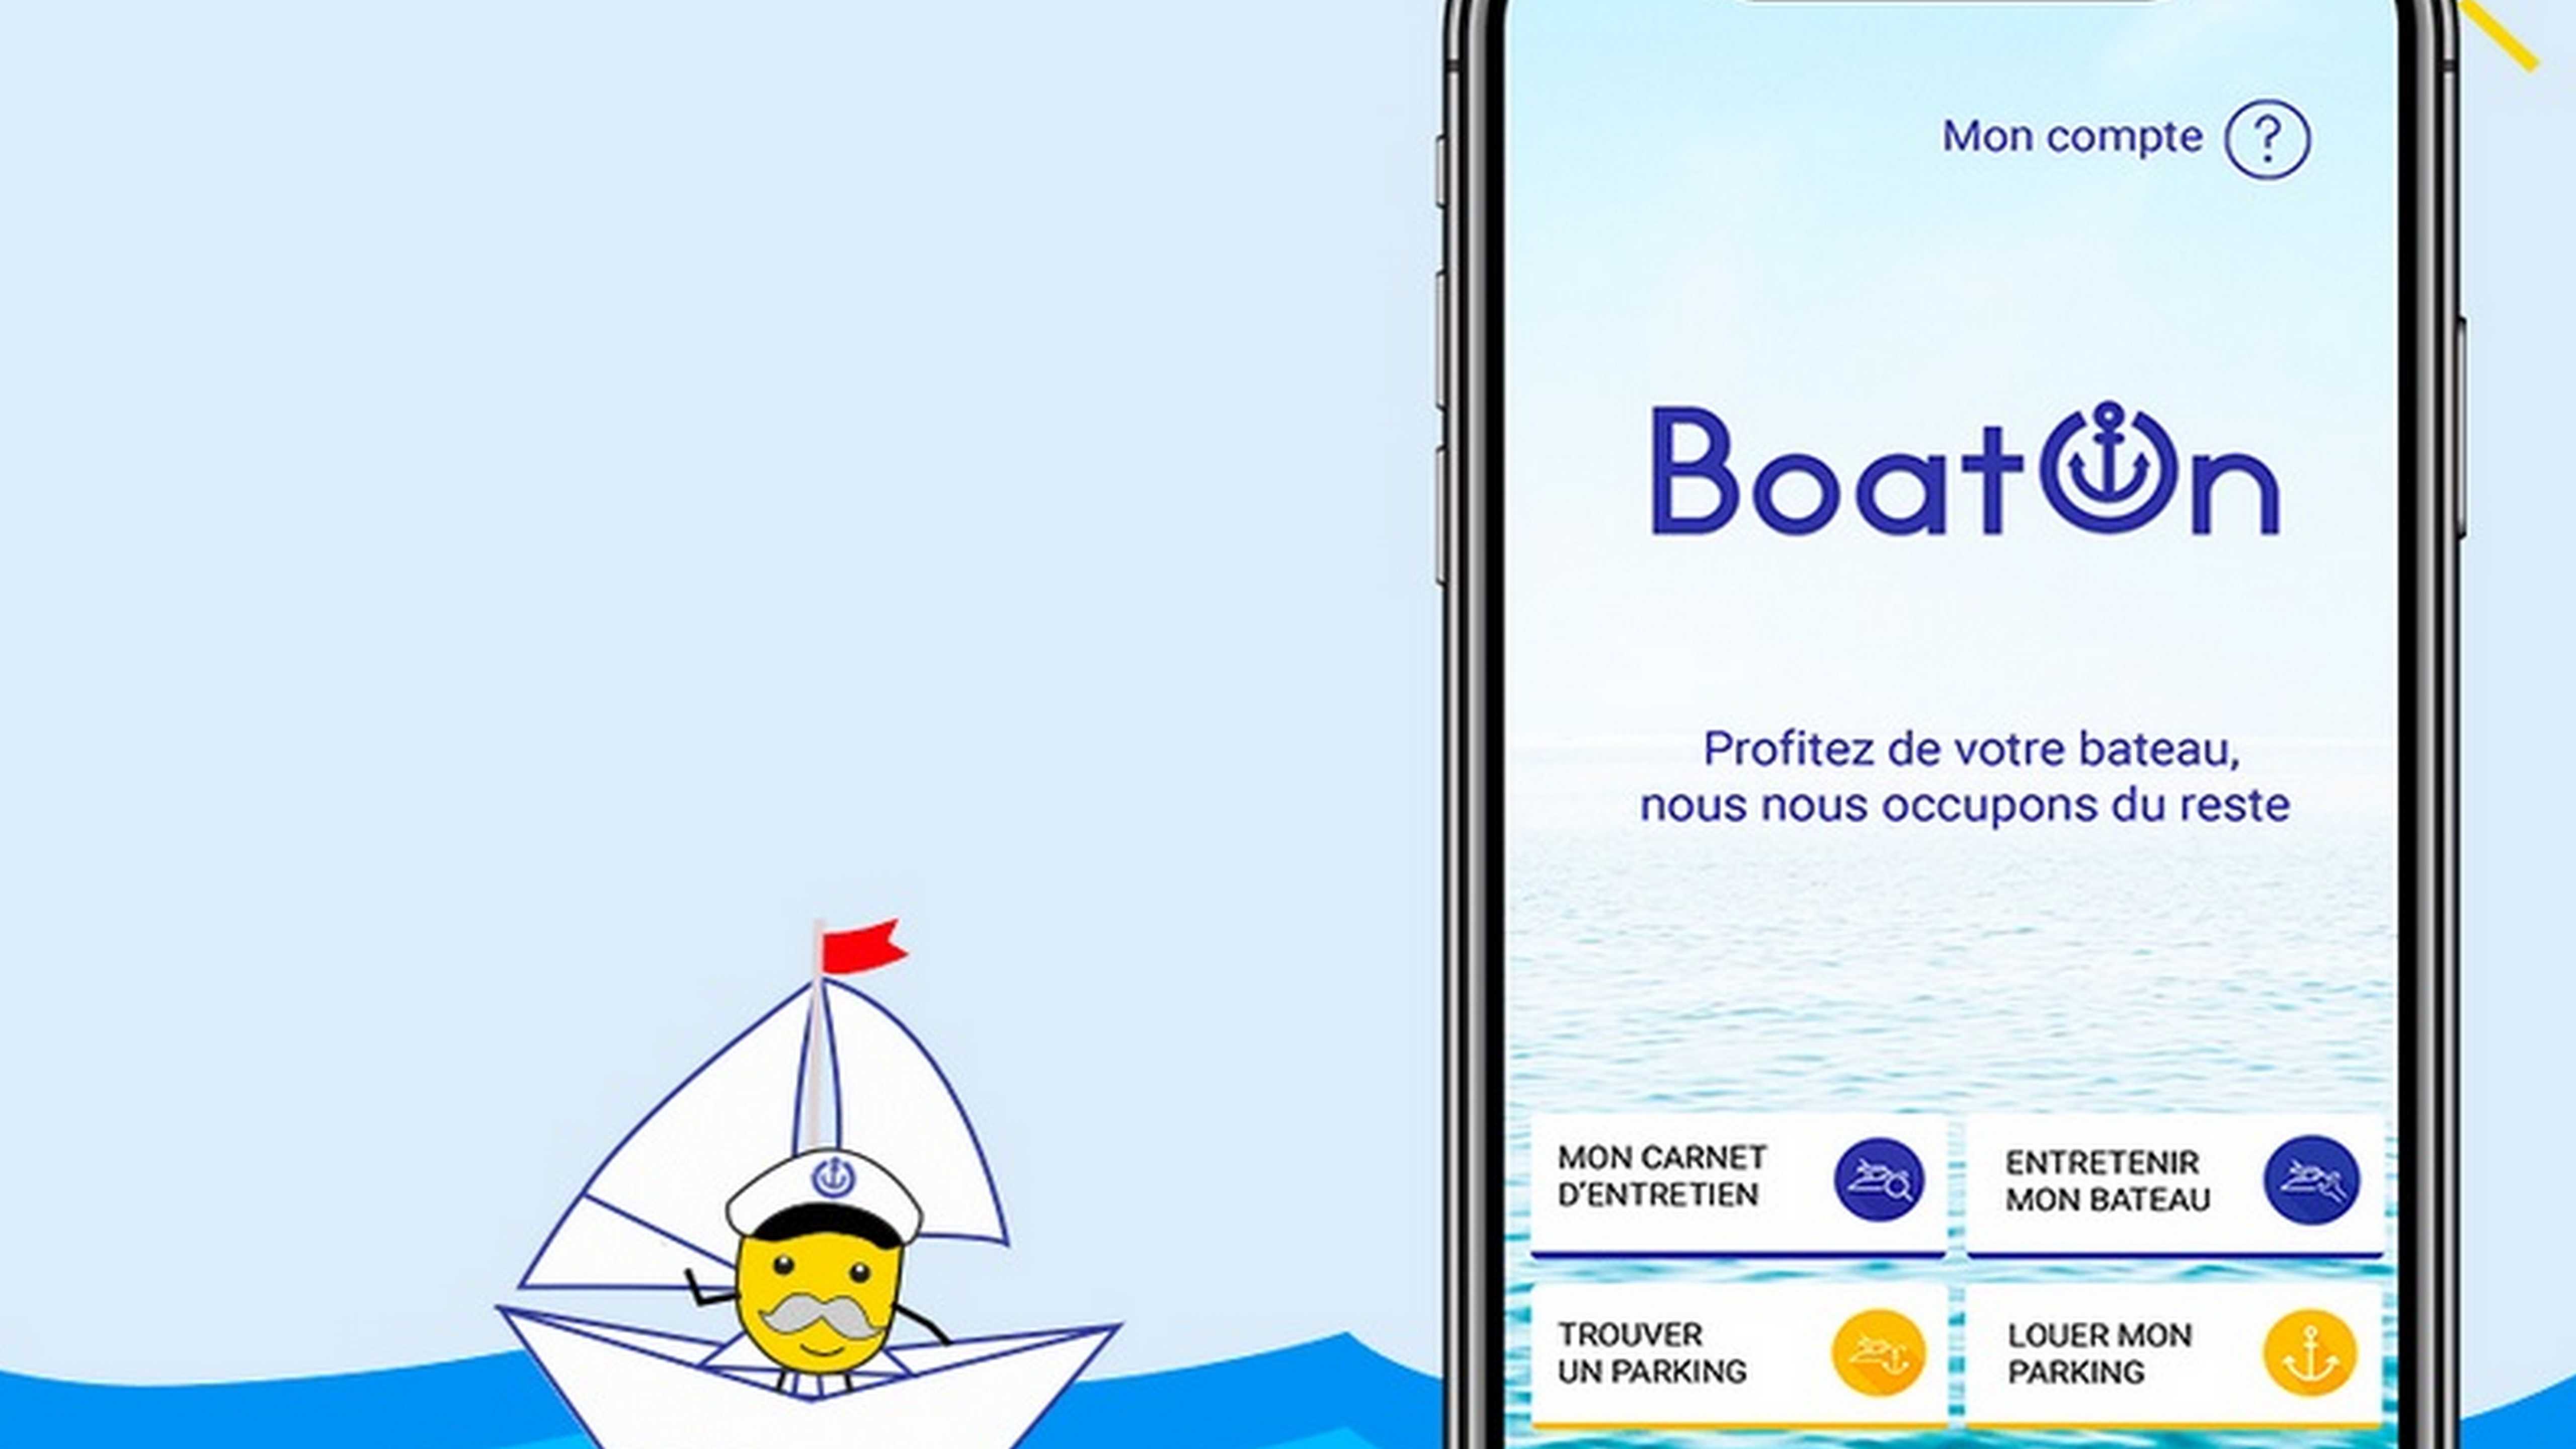 L'application "BoatOn" digitalise depuis 2 ans le secteur du nautisme